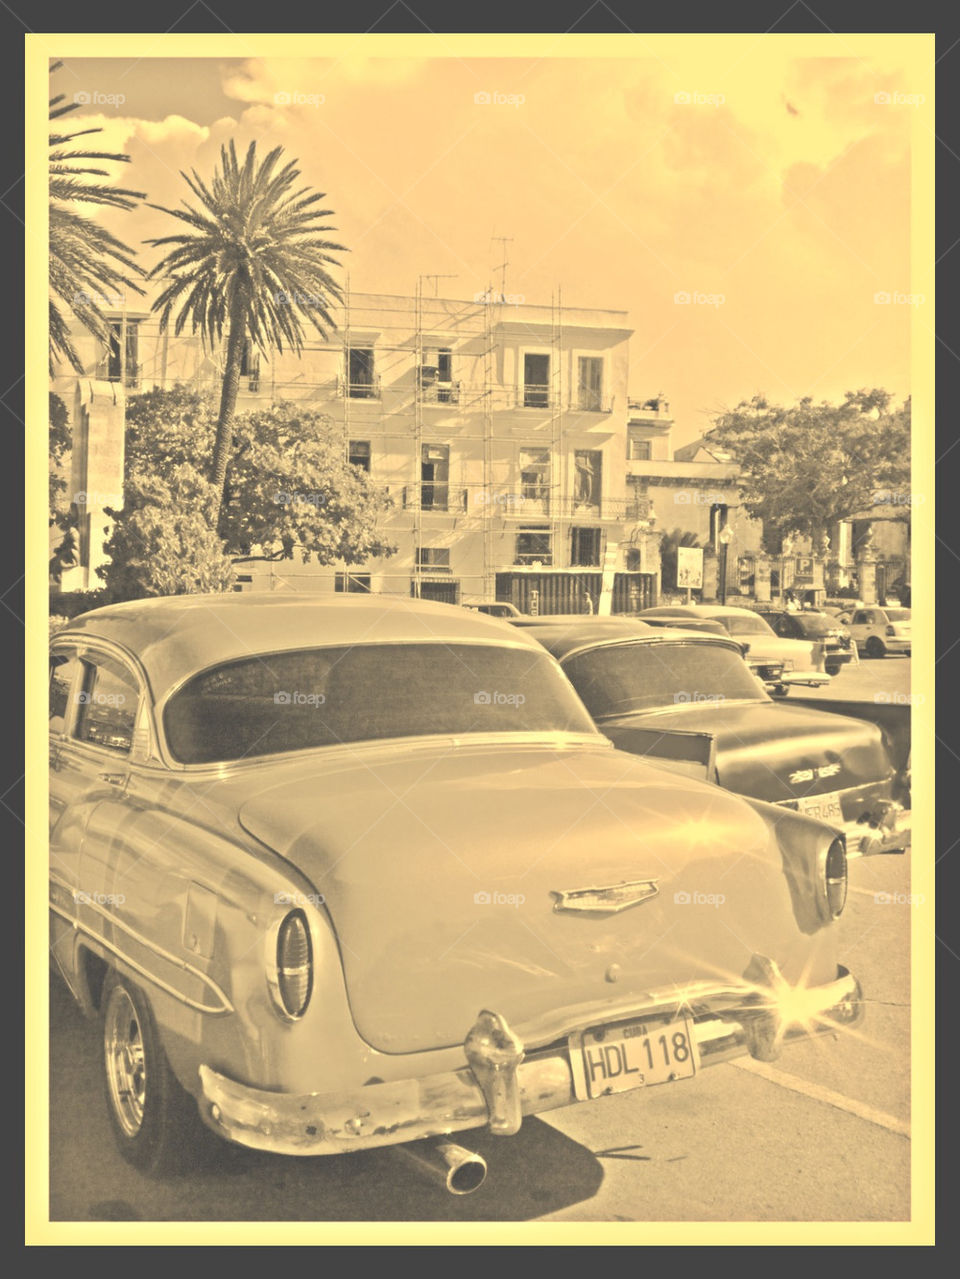 Back in time in Havana